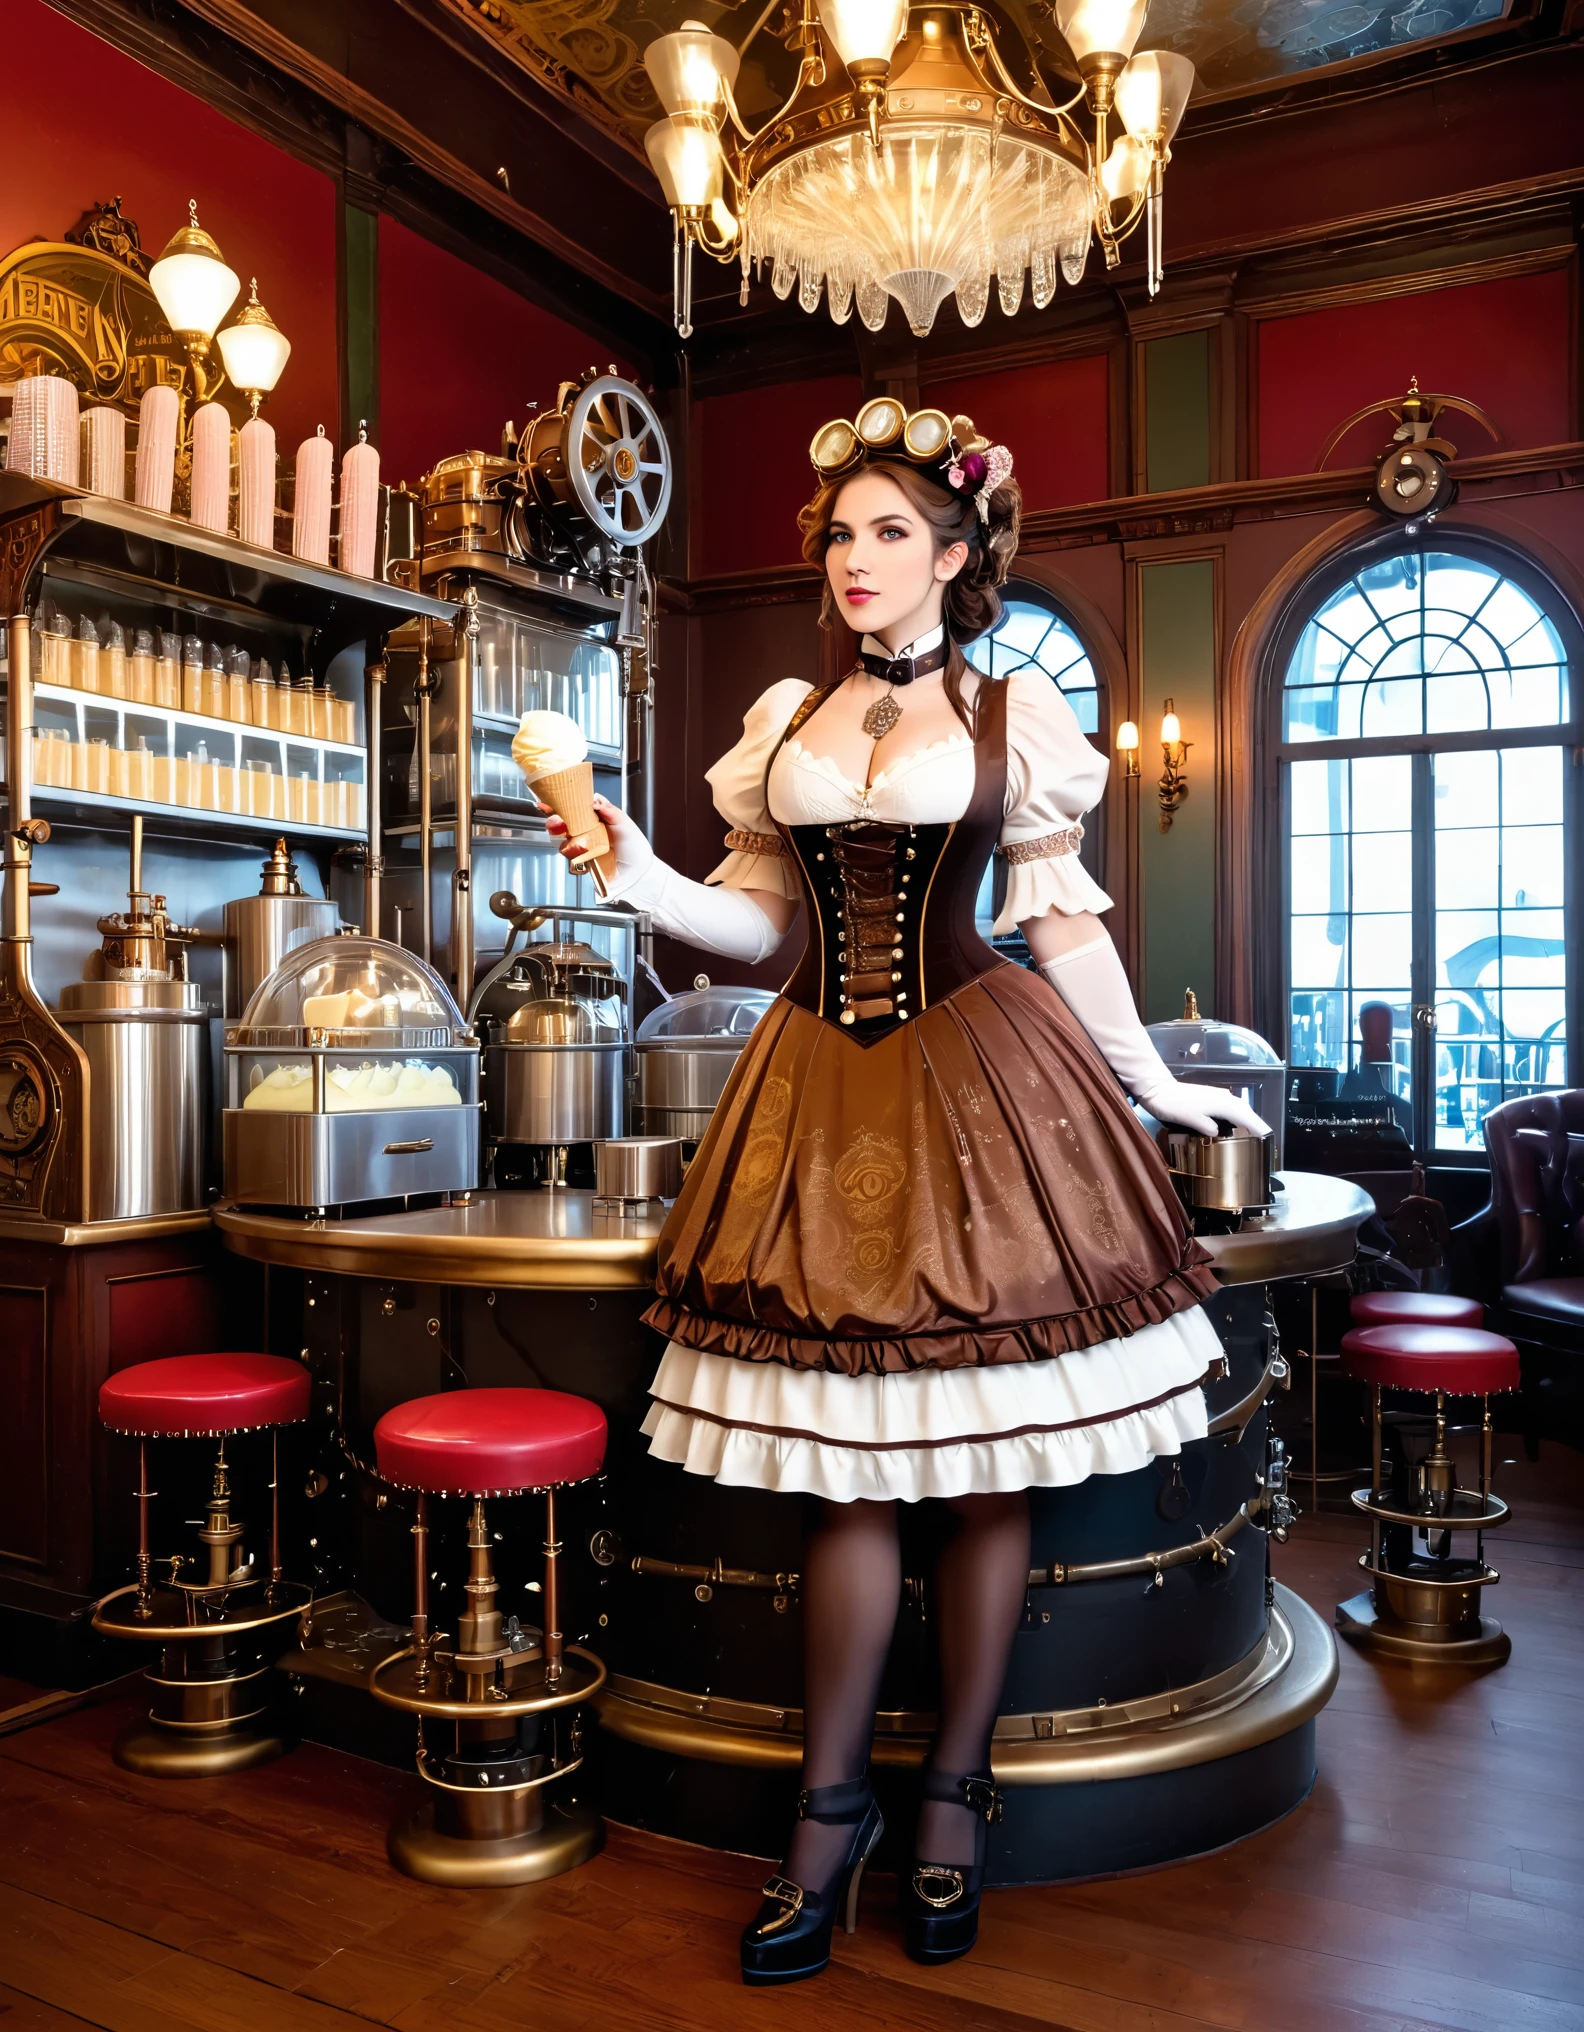 Ein Steampunk-Mädchen mit zahnradgeschmücktem Kleid und mechanischen Eismaschinen, in einer viktorianischen Dessertbar.